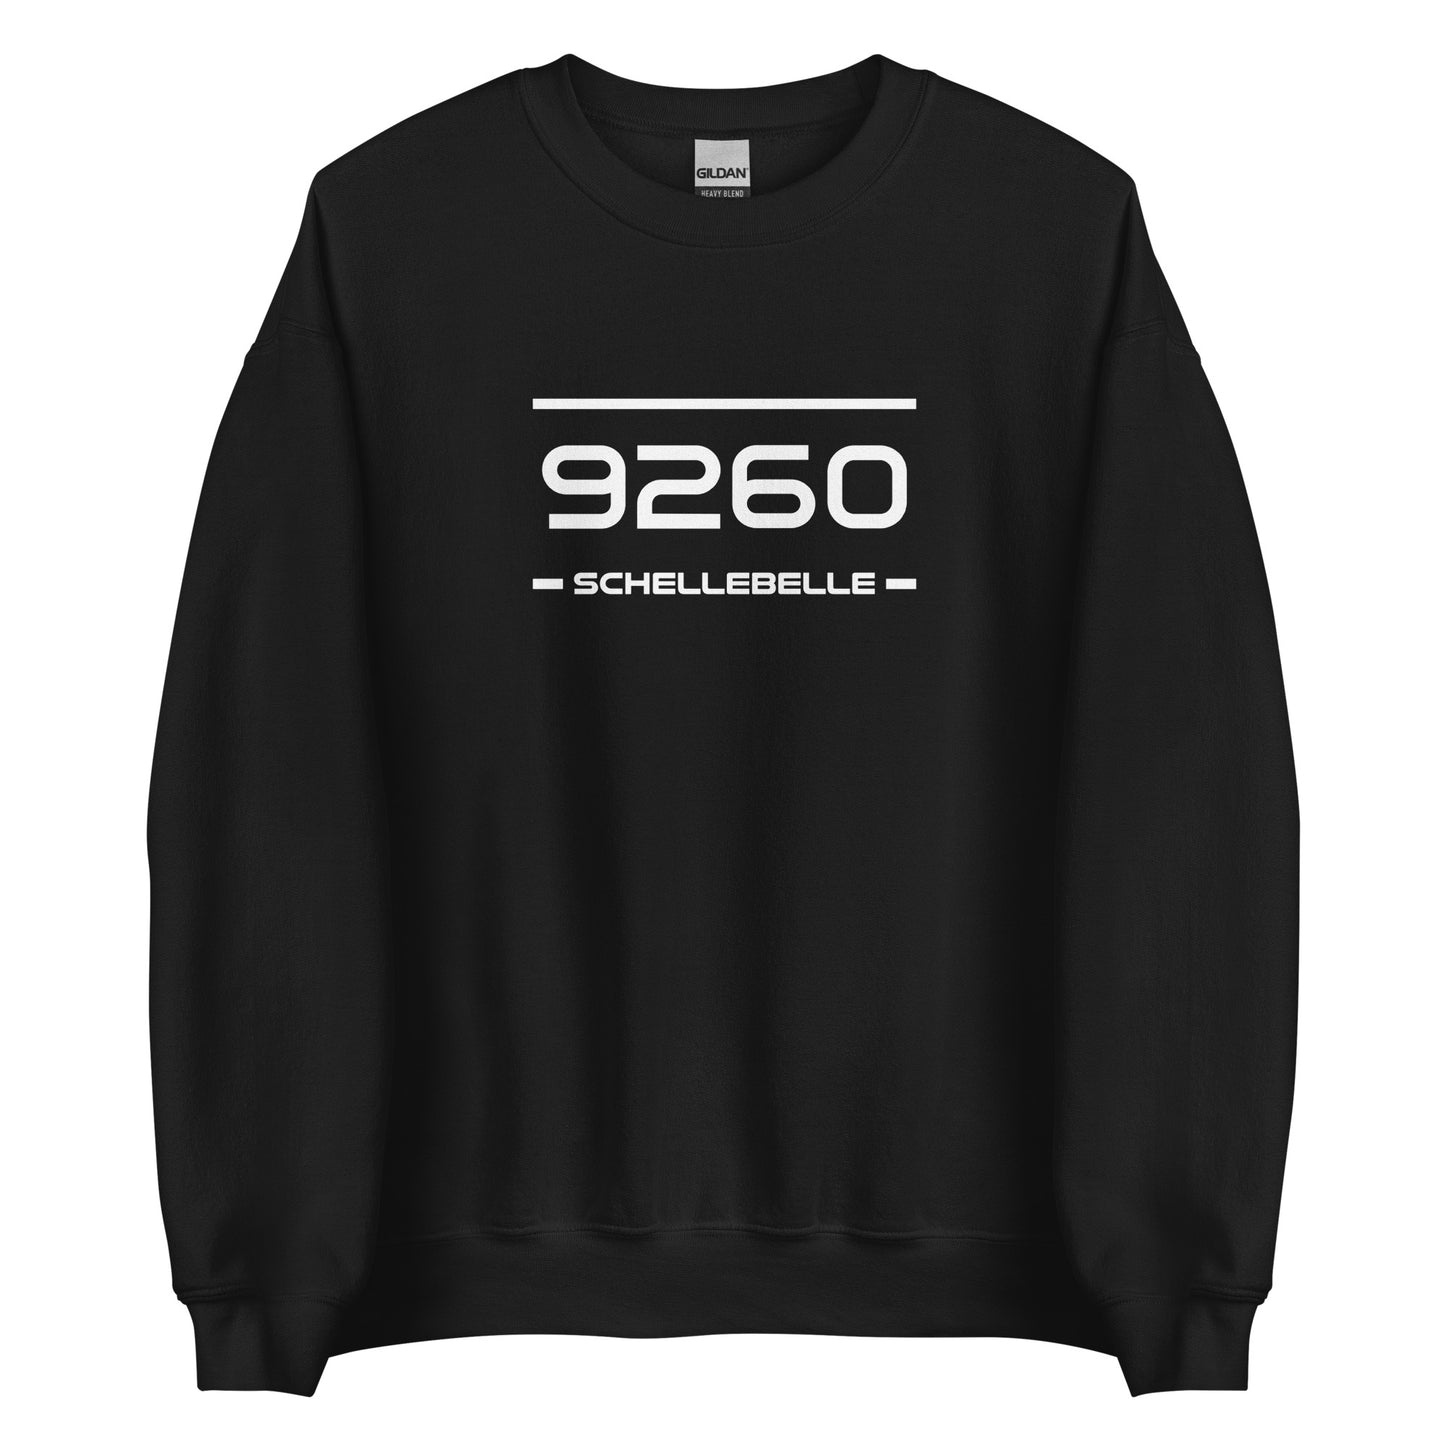 Sweater - 9260 - Schellebelle (M/V)